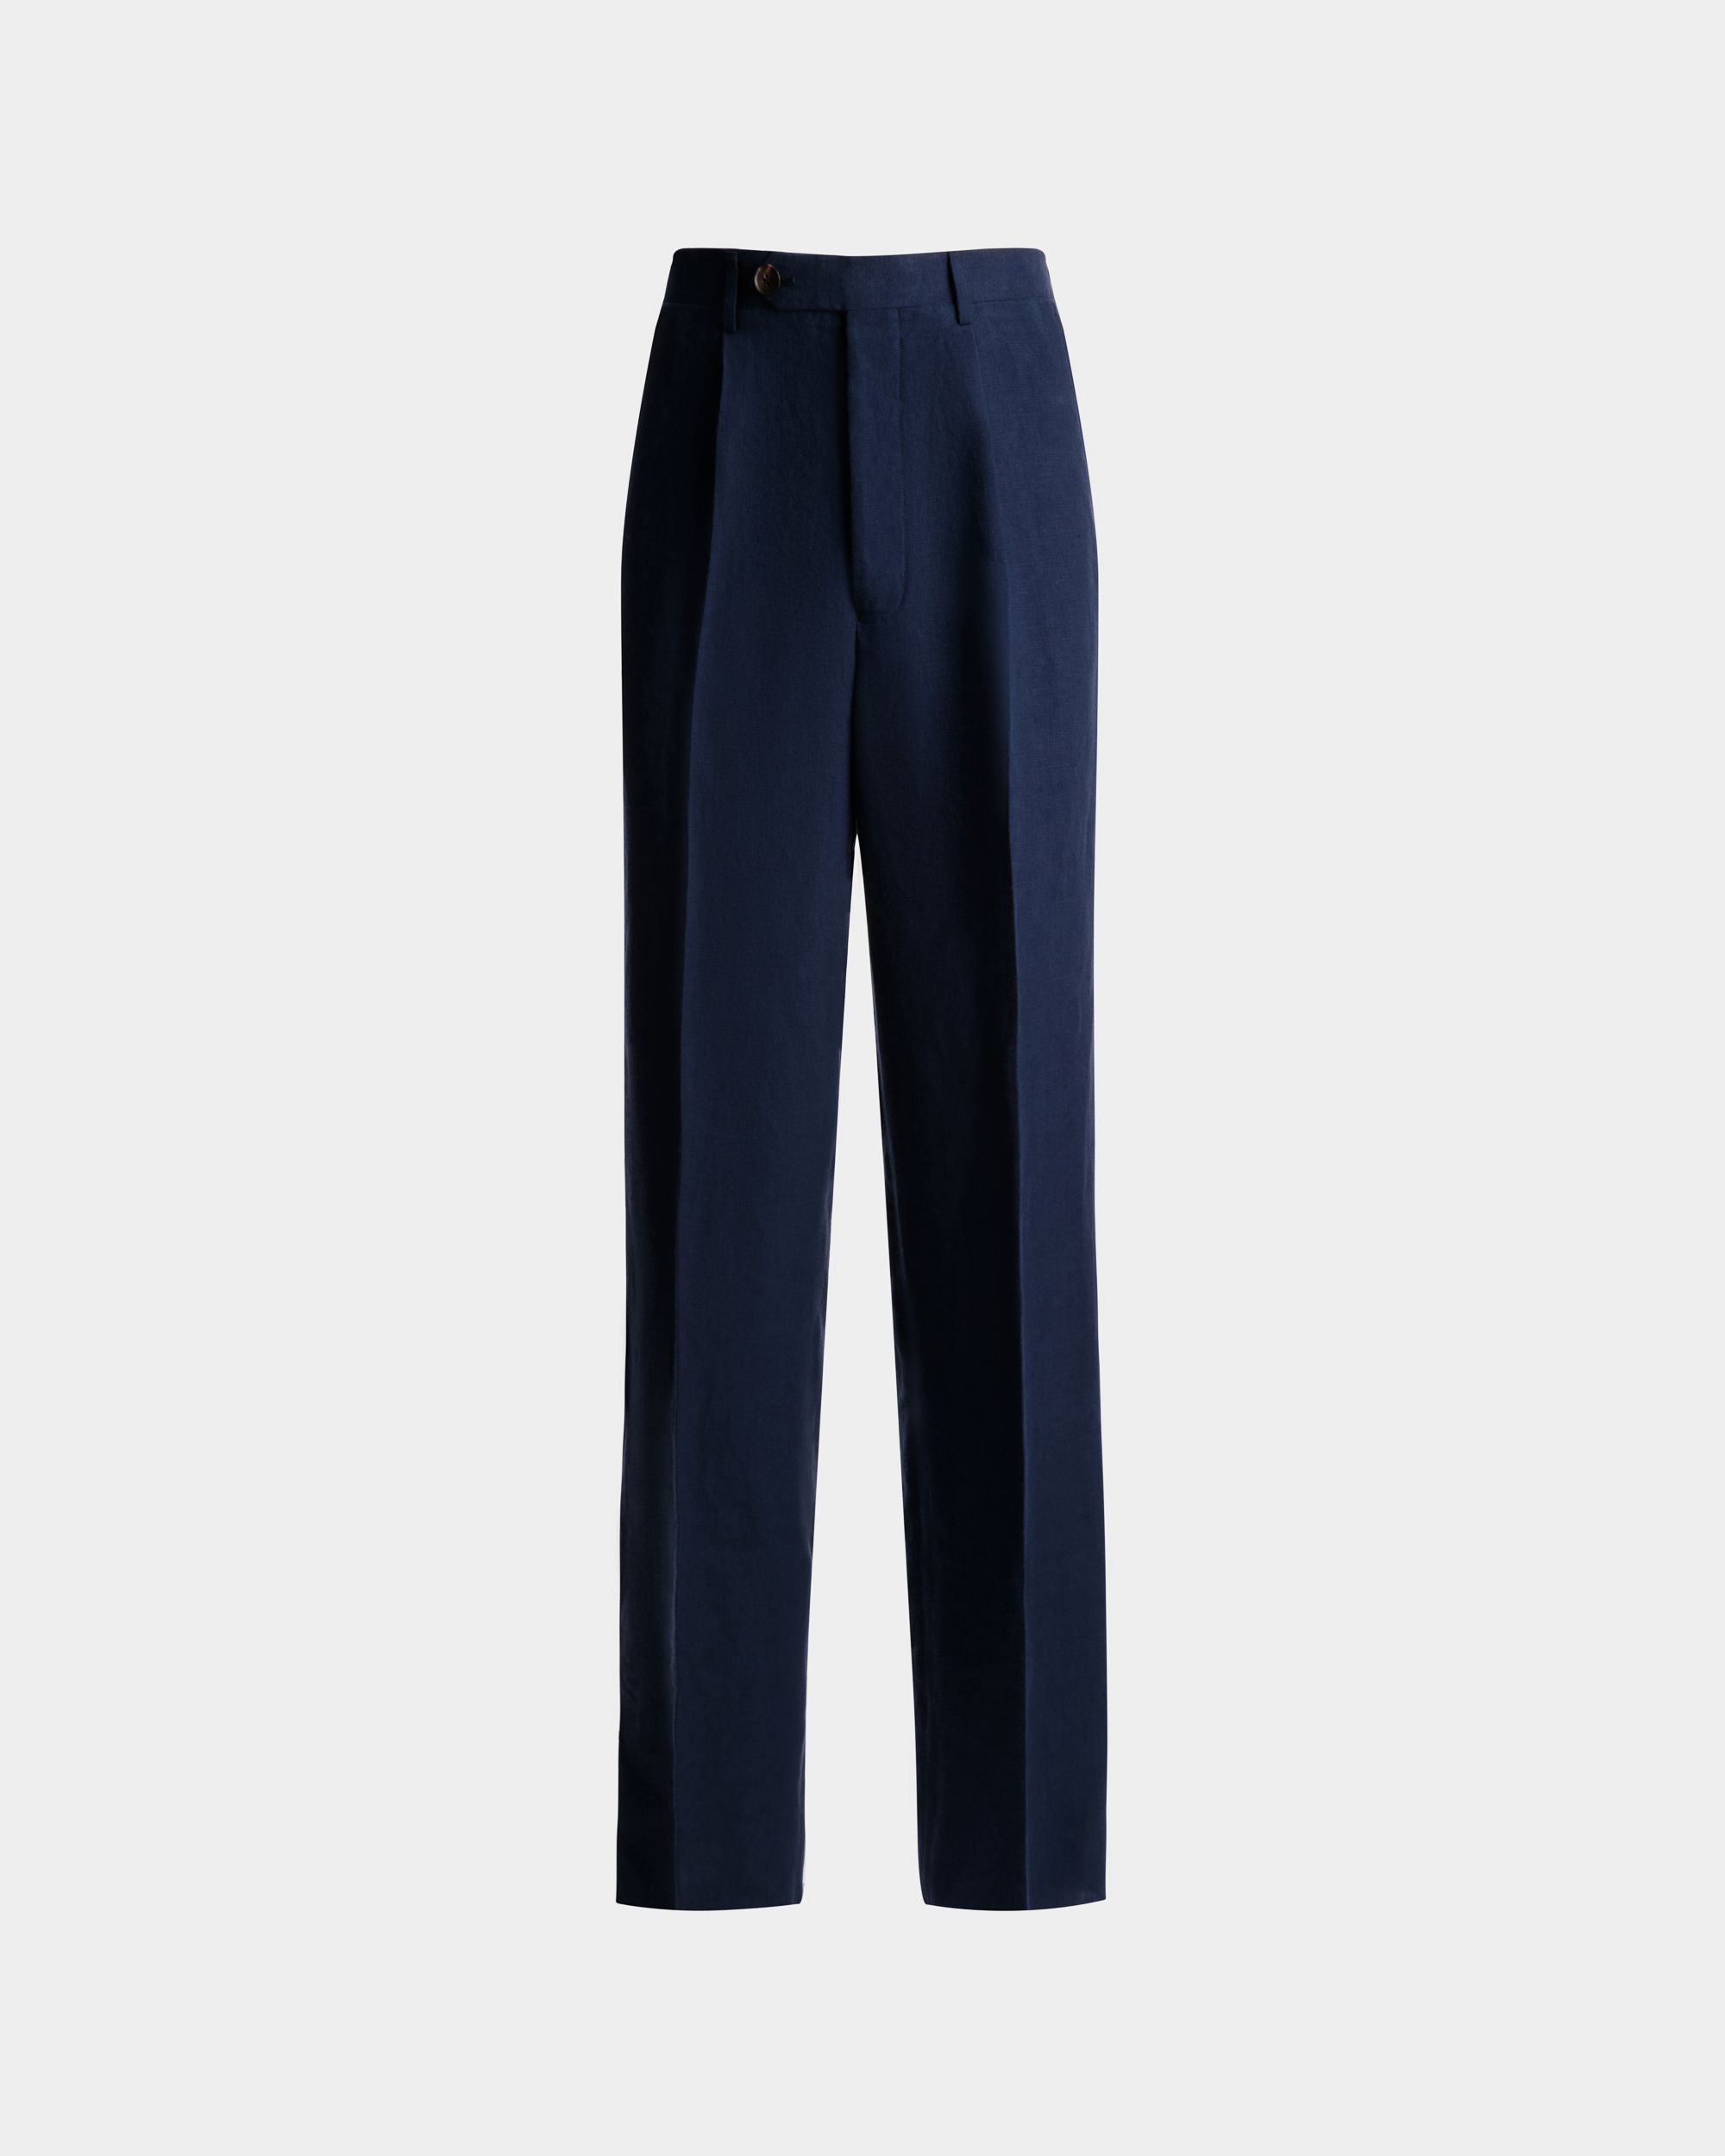 Men's Pants in Navy Blue Linen | Bally | Still Life Front